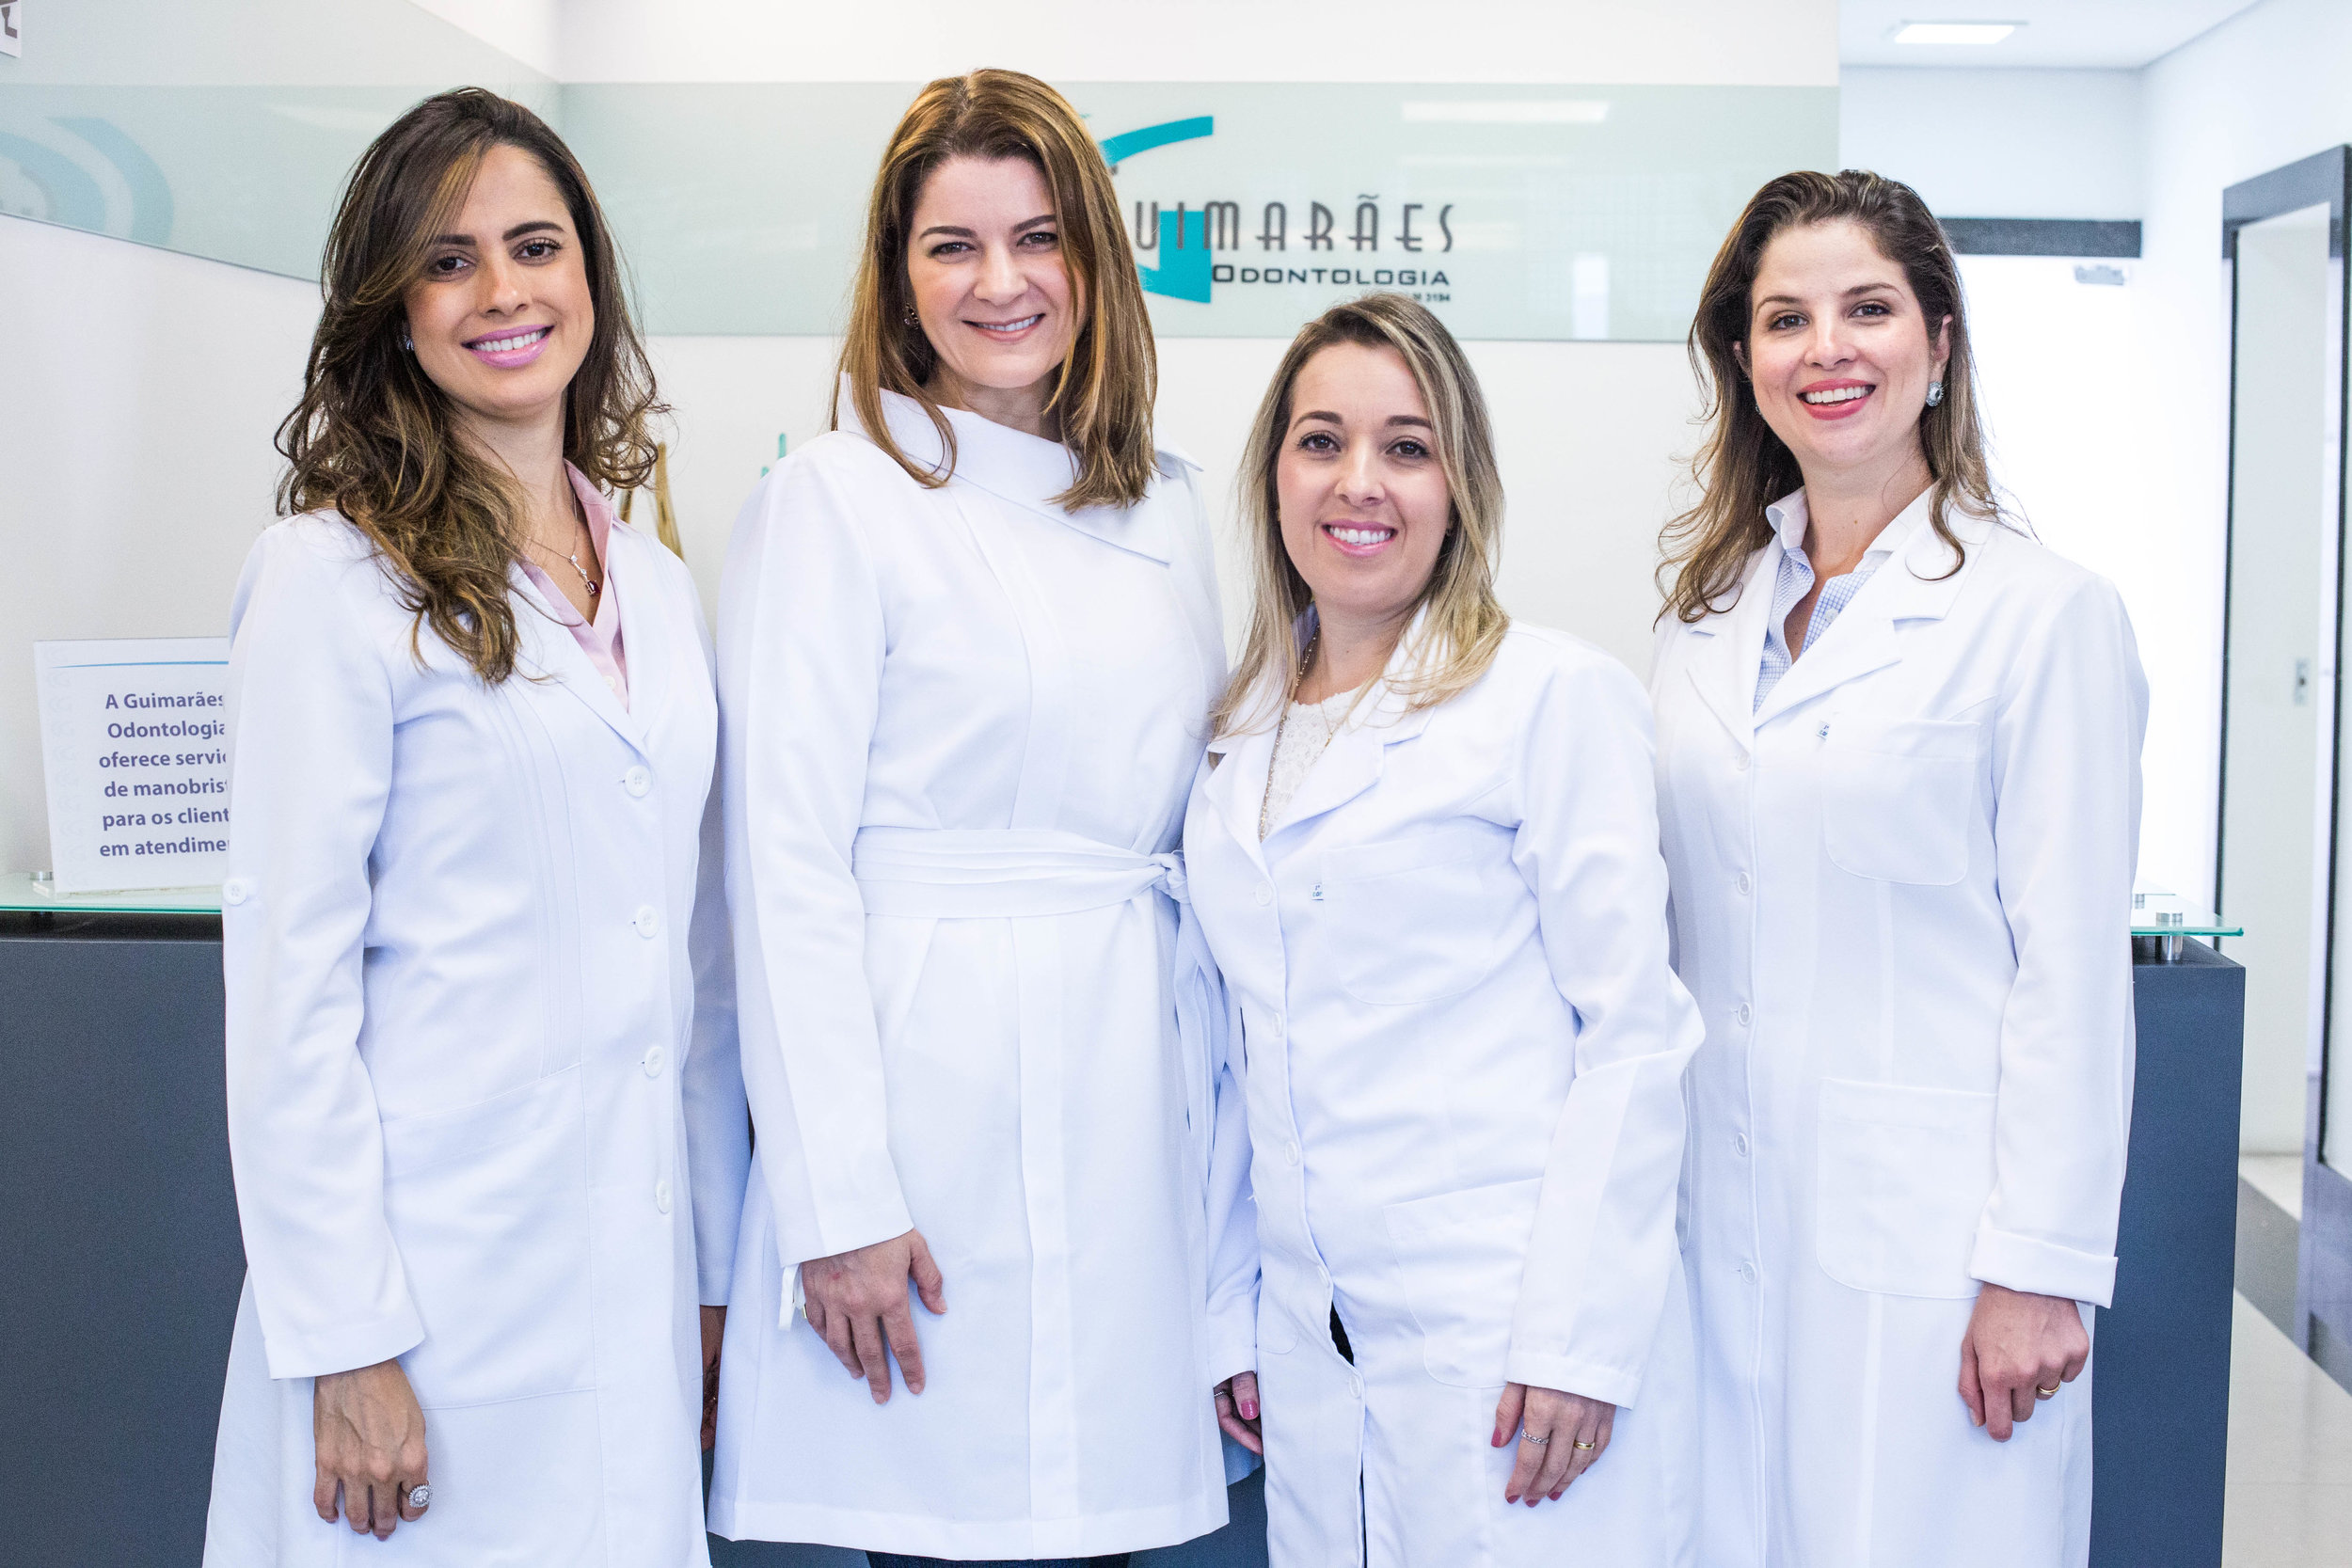   Dentistas Clínica Guimarães  